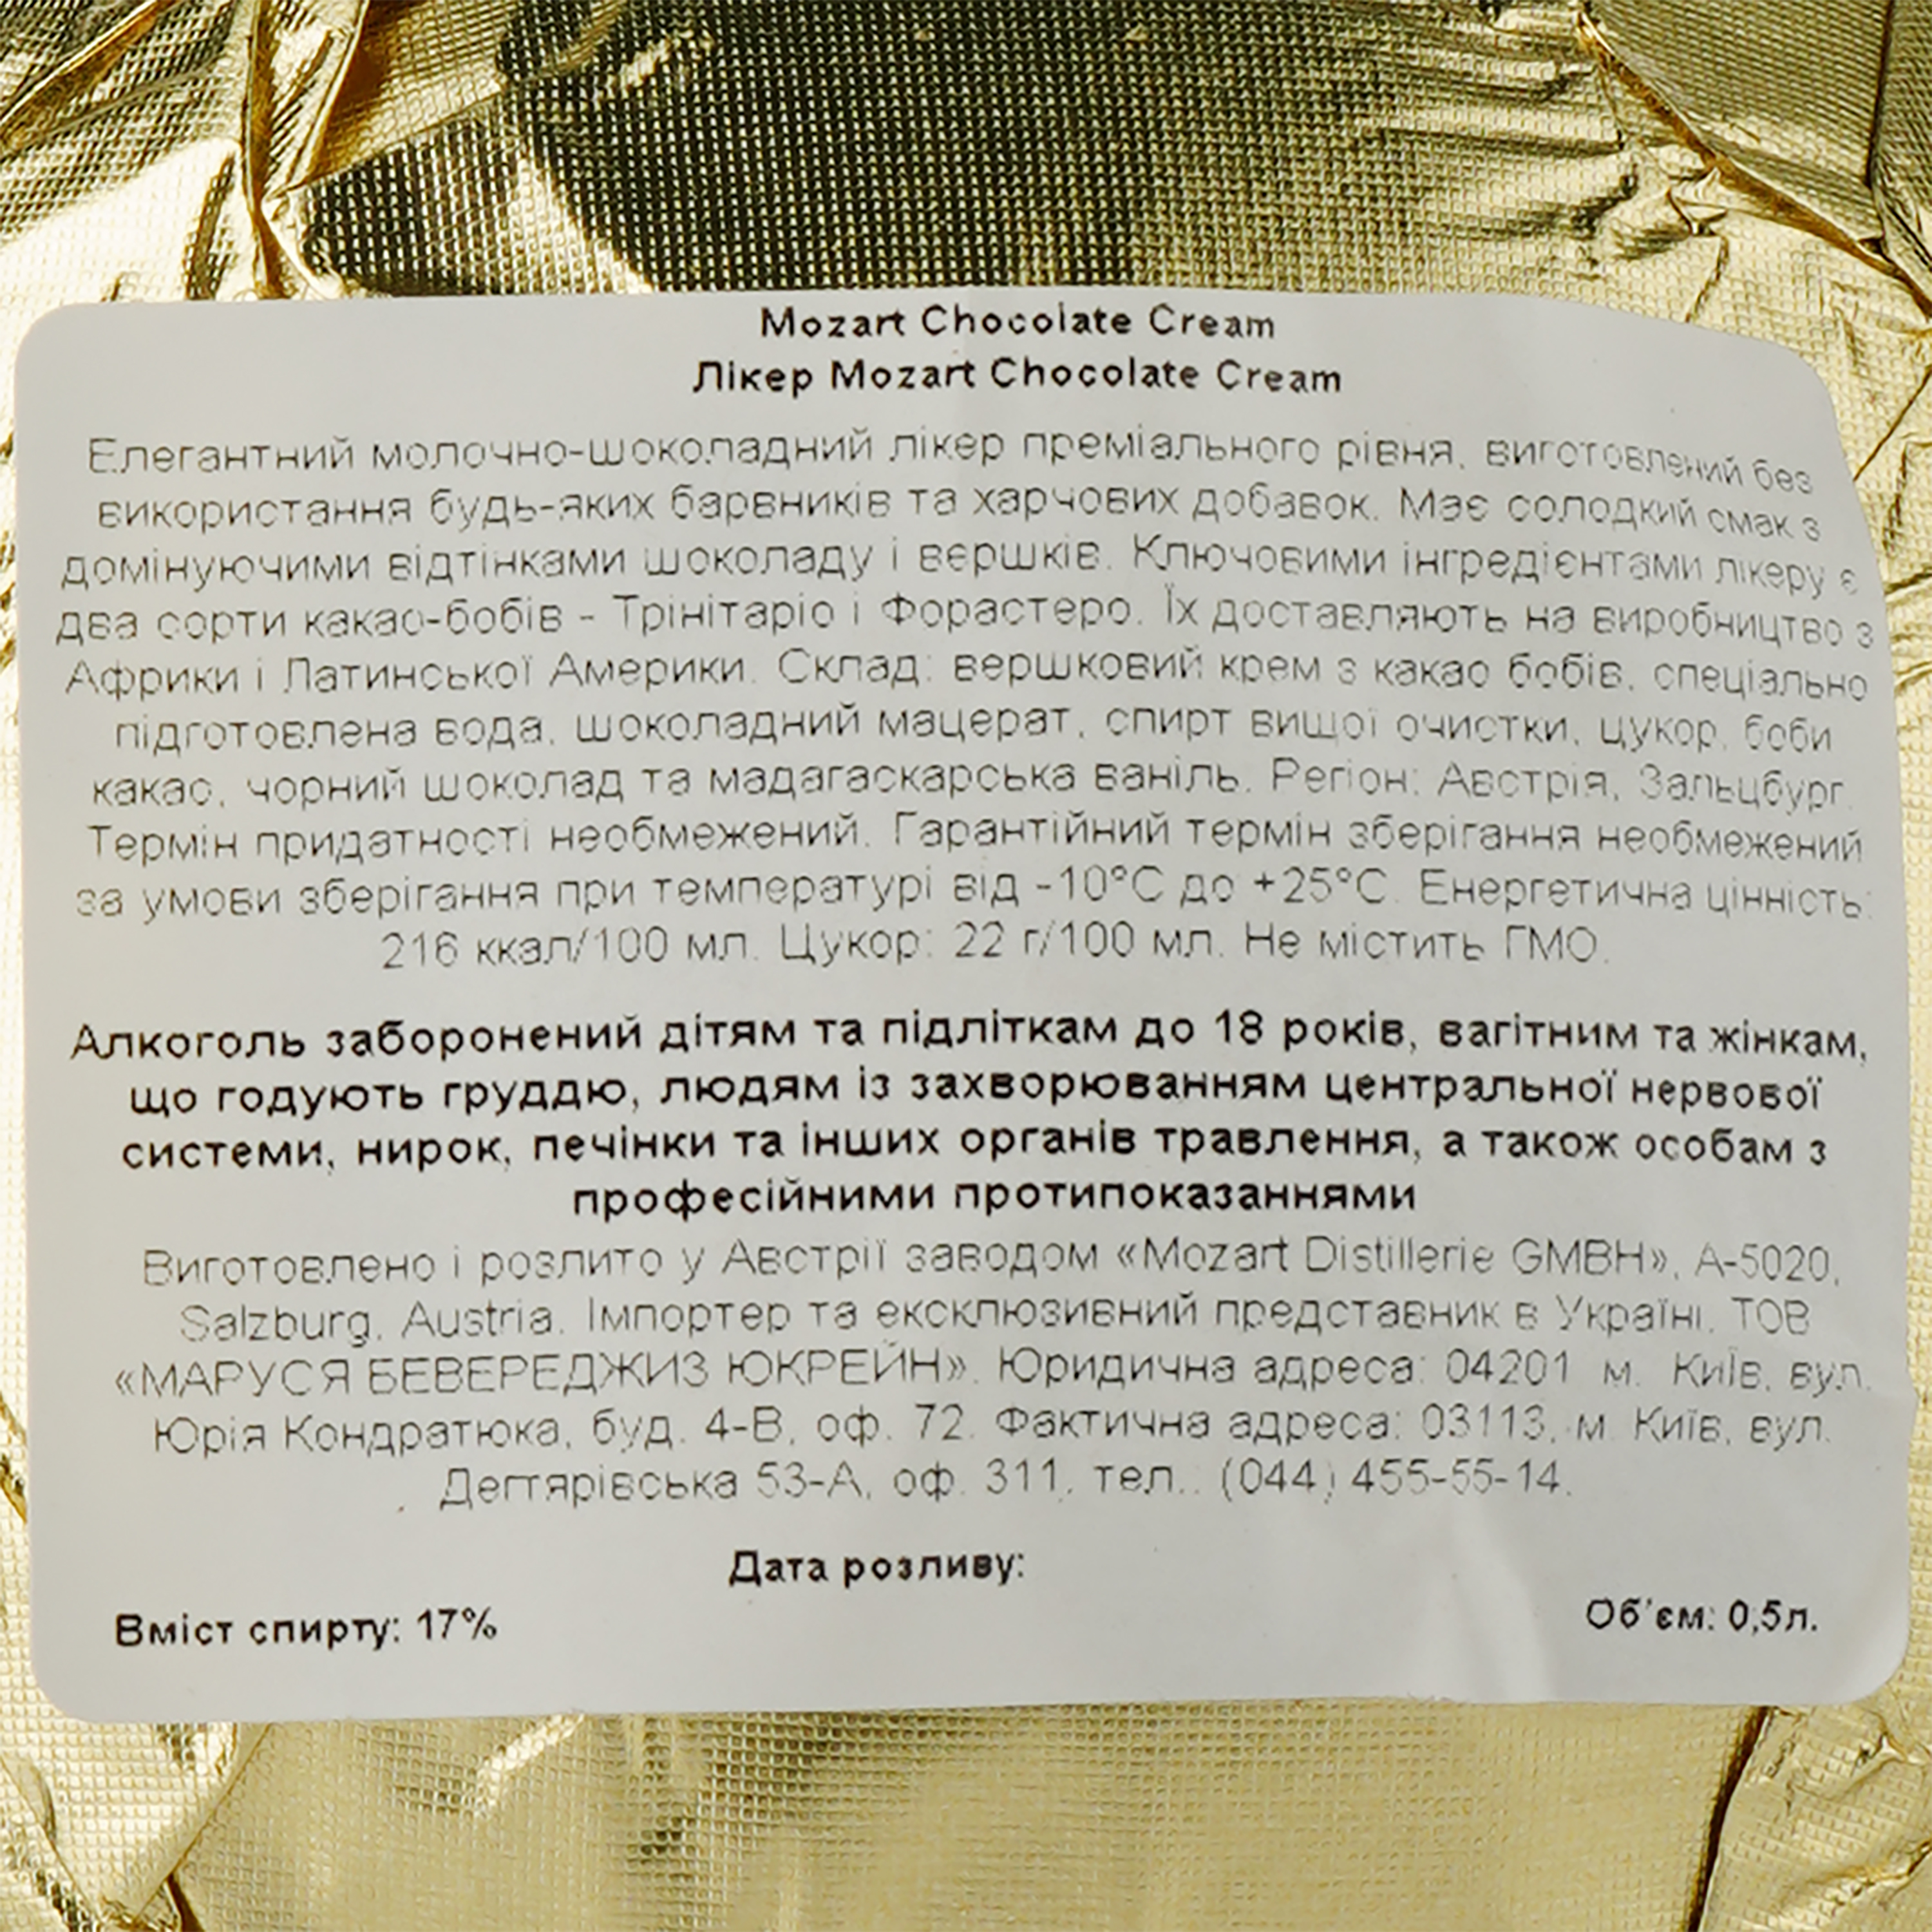 Лікер Mozart Chocolate Cream Gold, у подарунковій упаковці, з келихом, 17%, 0,5 л - фото 5